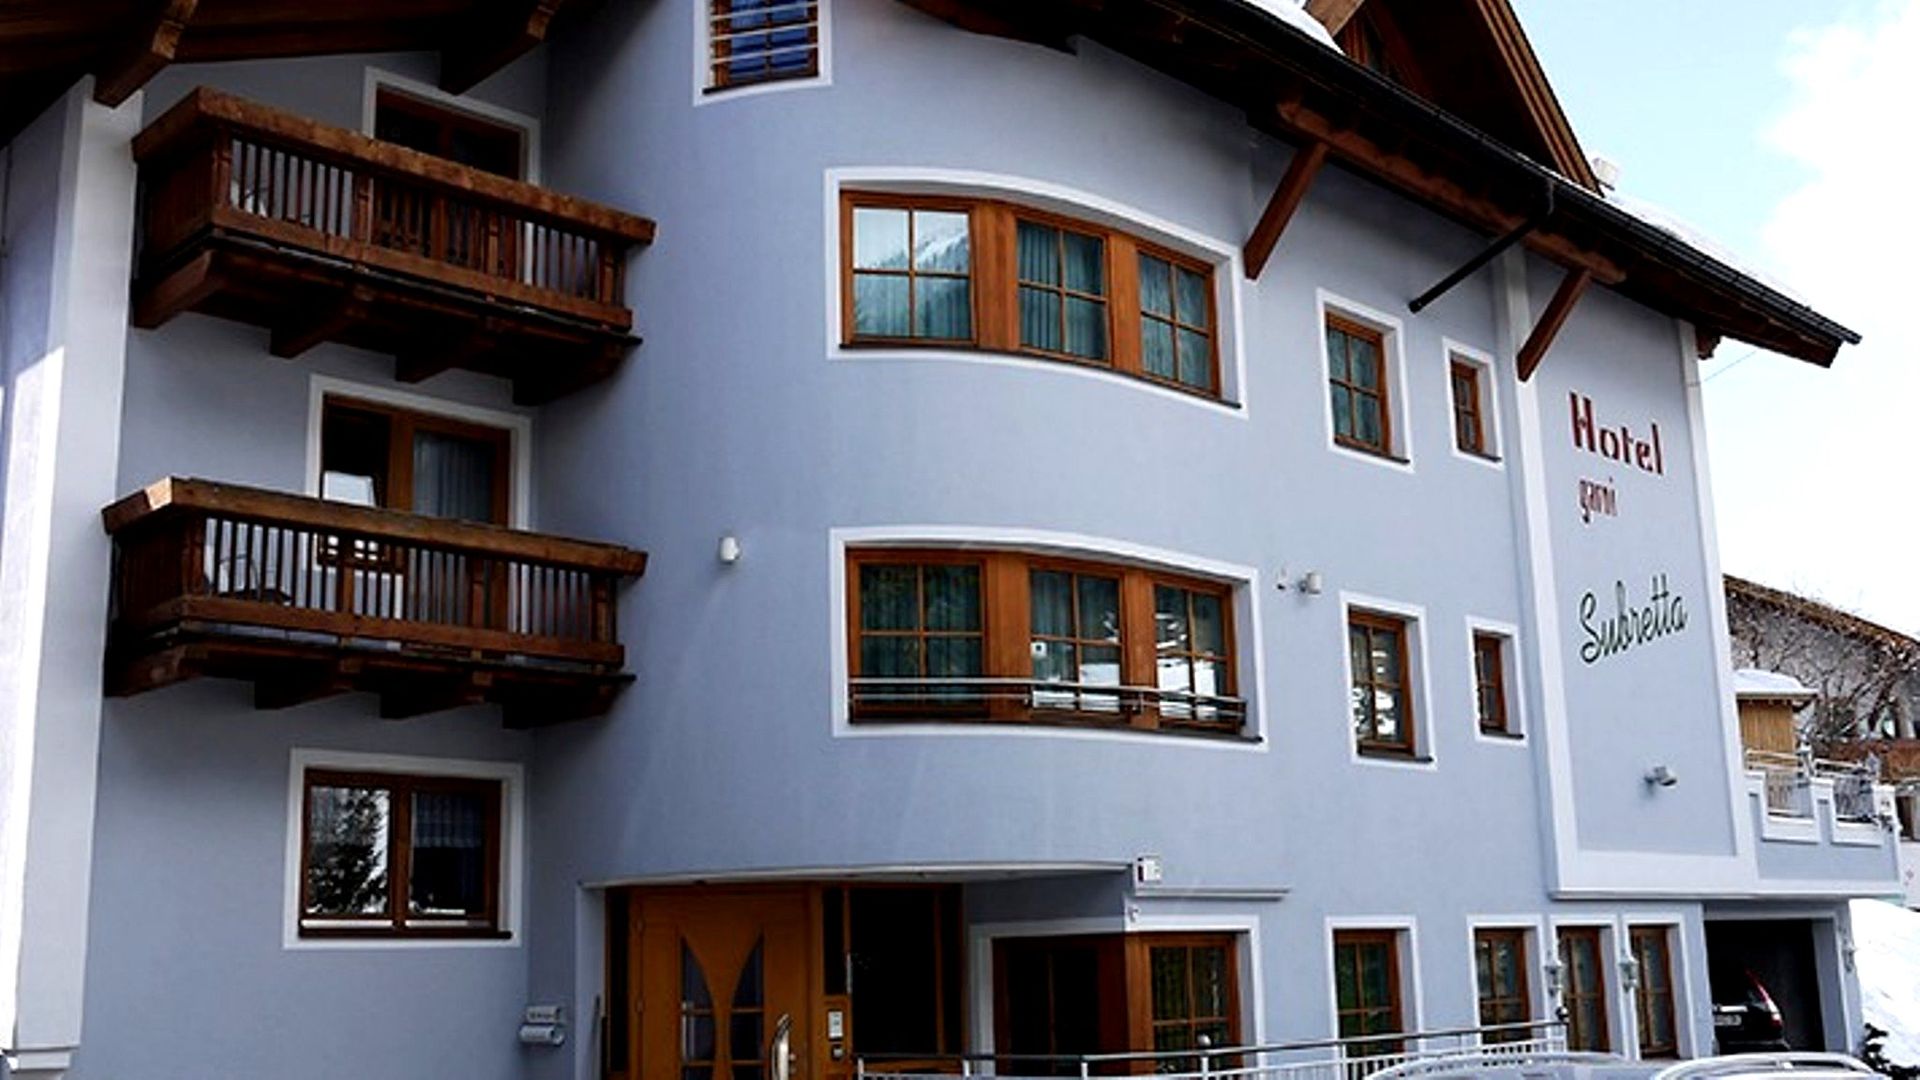 Goedkope skivakantie Paznauntal ❄ Hotel Garni Subretta